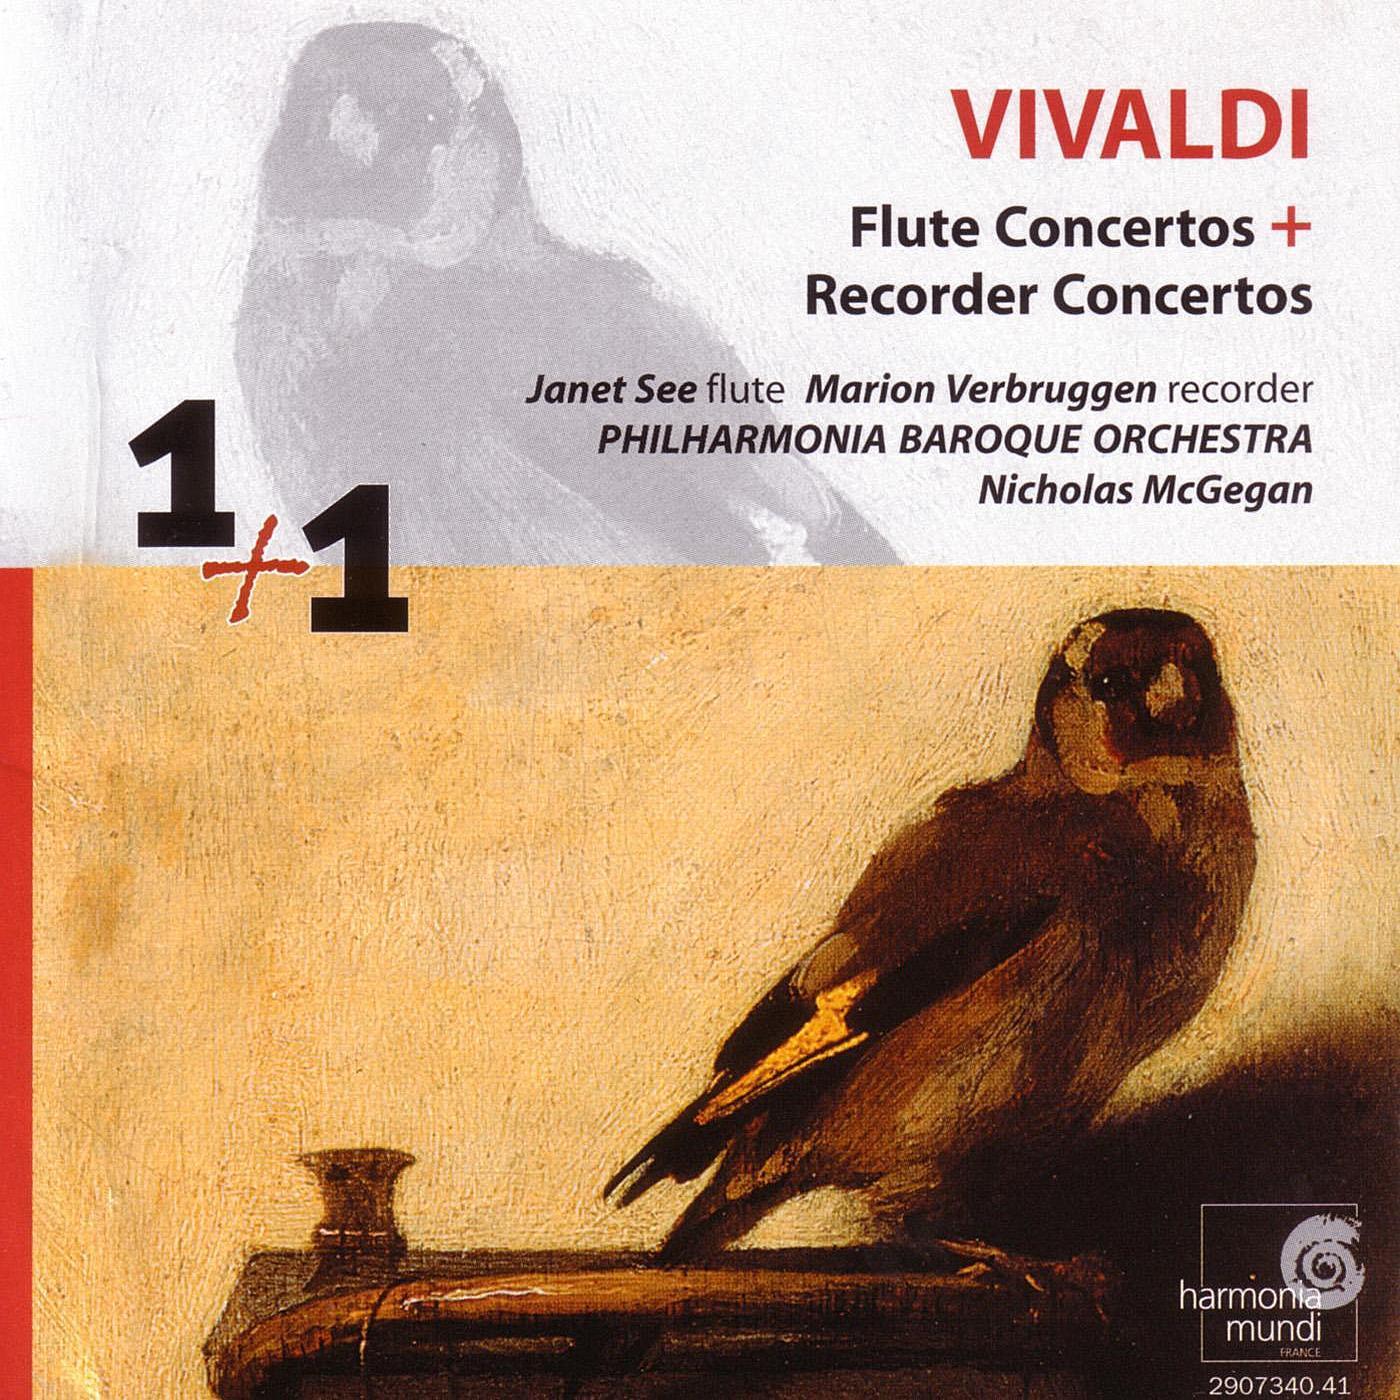 Recorder Concerto in C Minor, RV 441: I. Allegro non molto